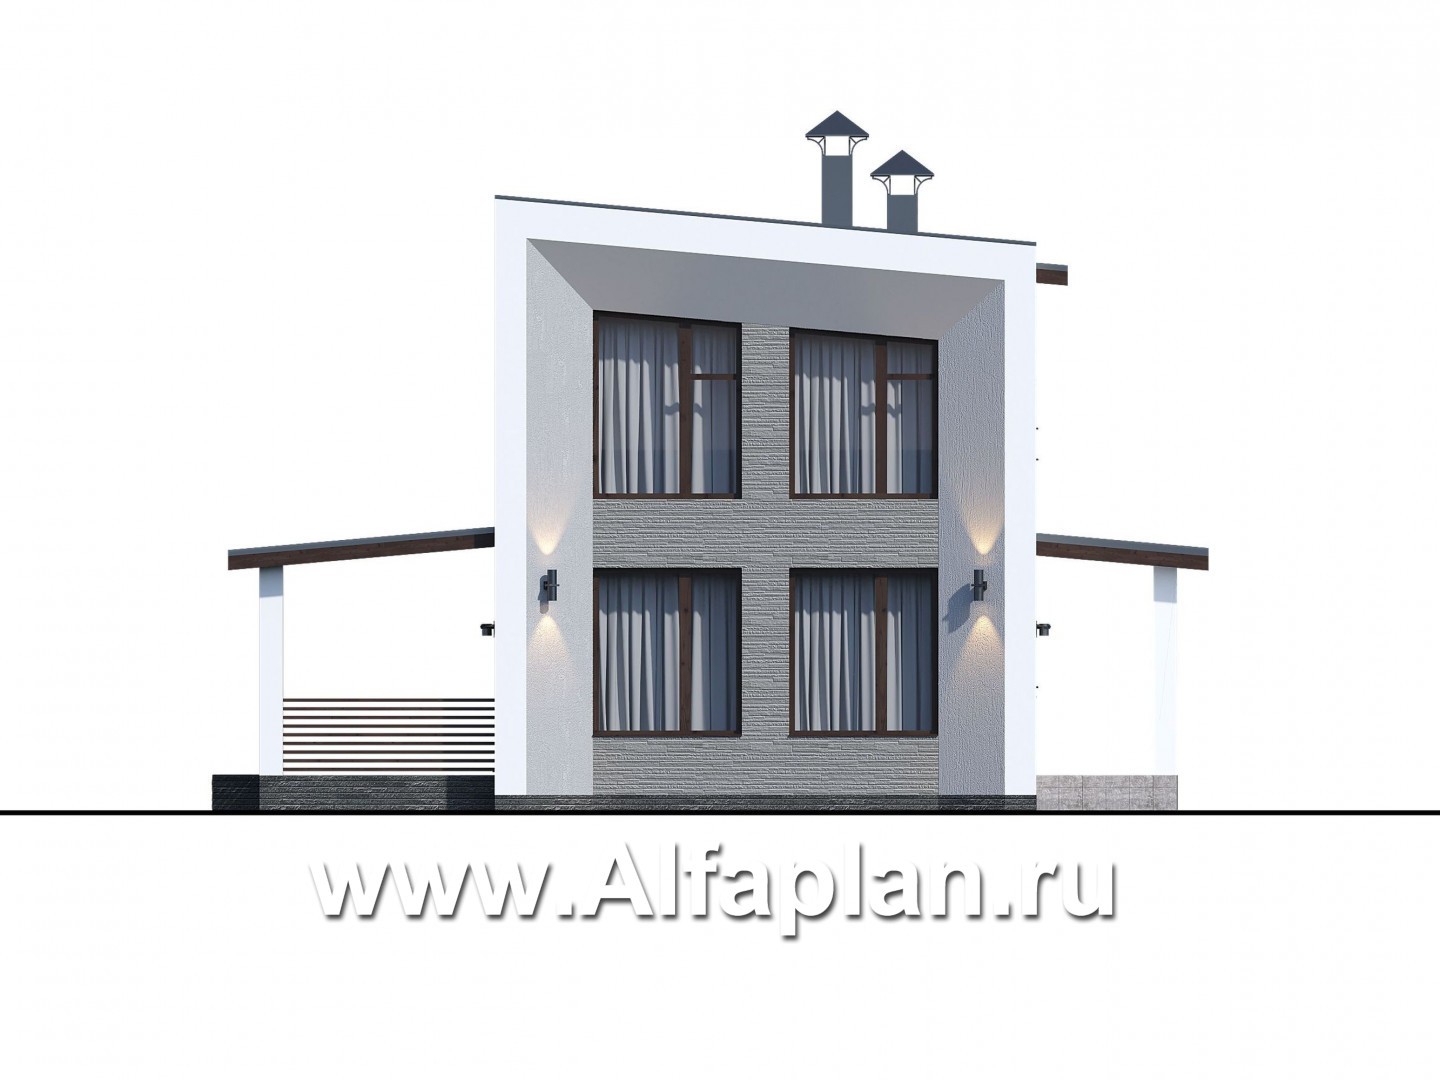 «Тау» - проект двухэтажного каркасного дома, планировка спальня на 1 эт,  в стиле минимализм - фасад дома